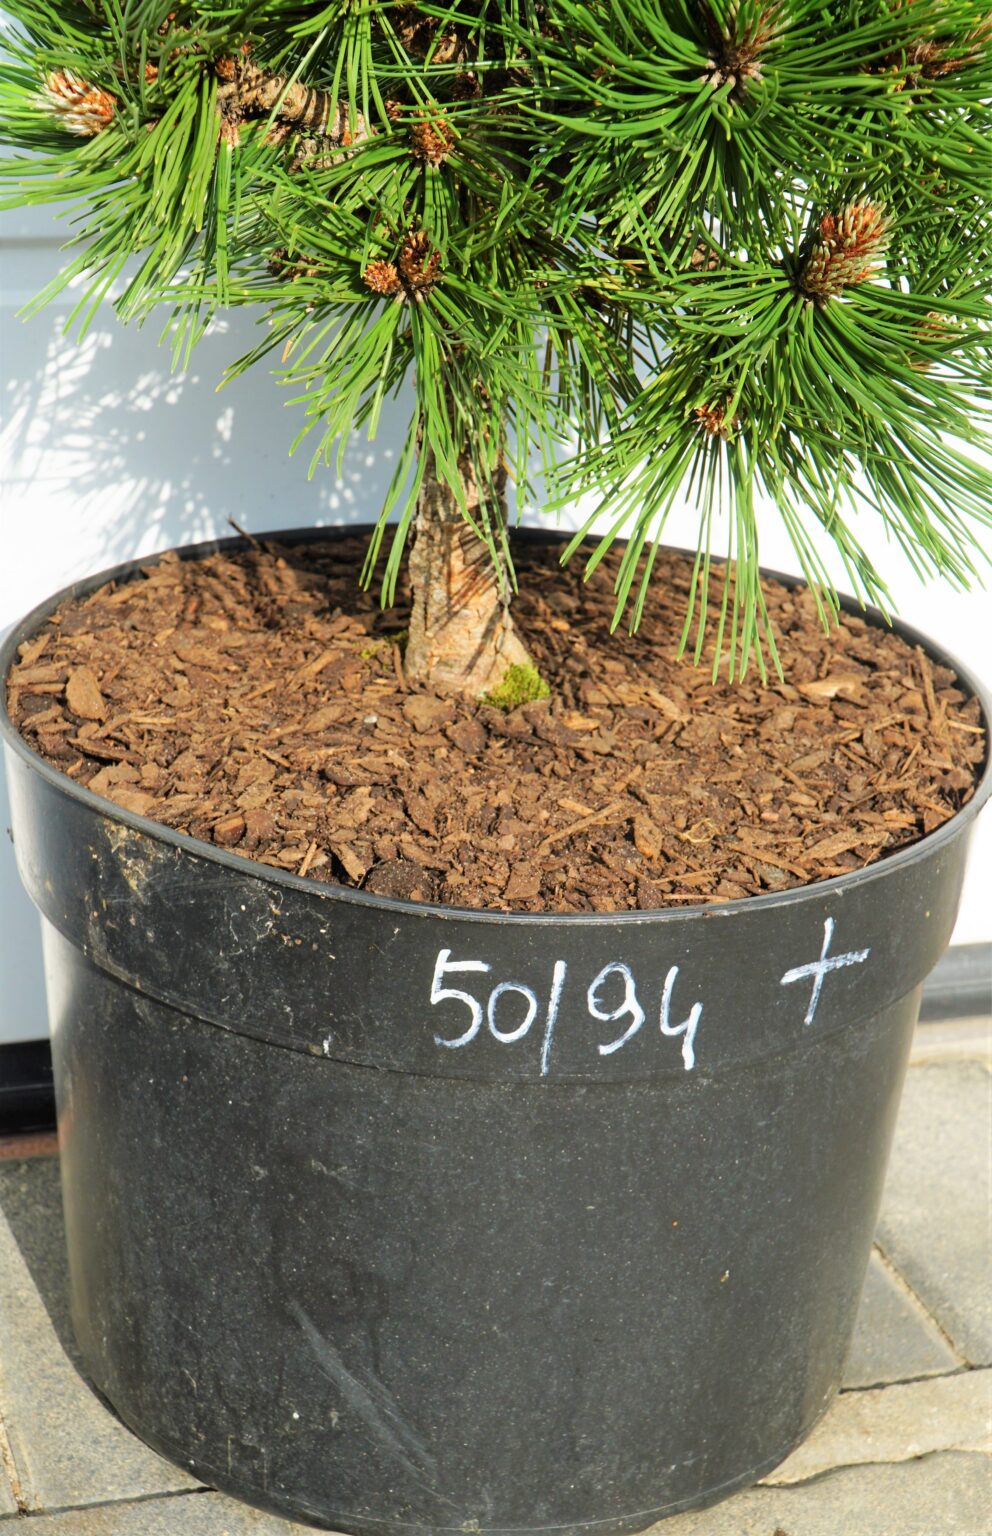 SOSNA BOŚNIACKA SMIDTII Pinus heldreichii